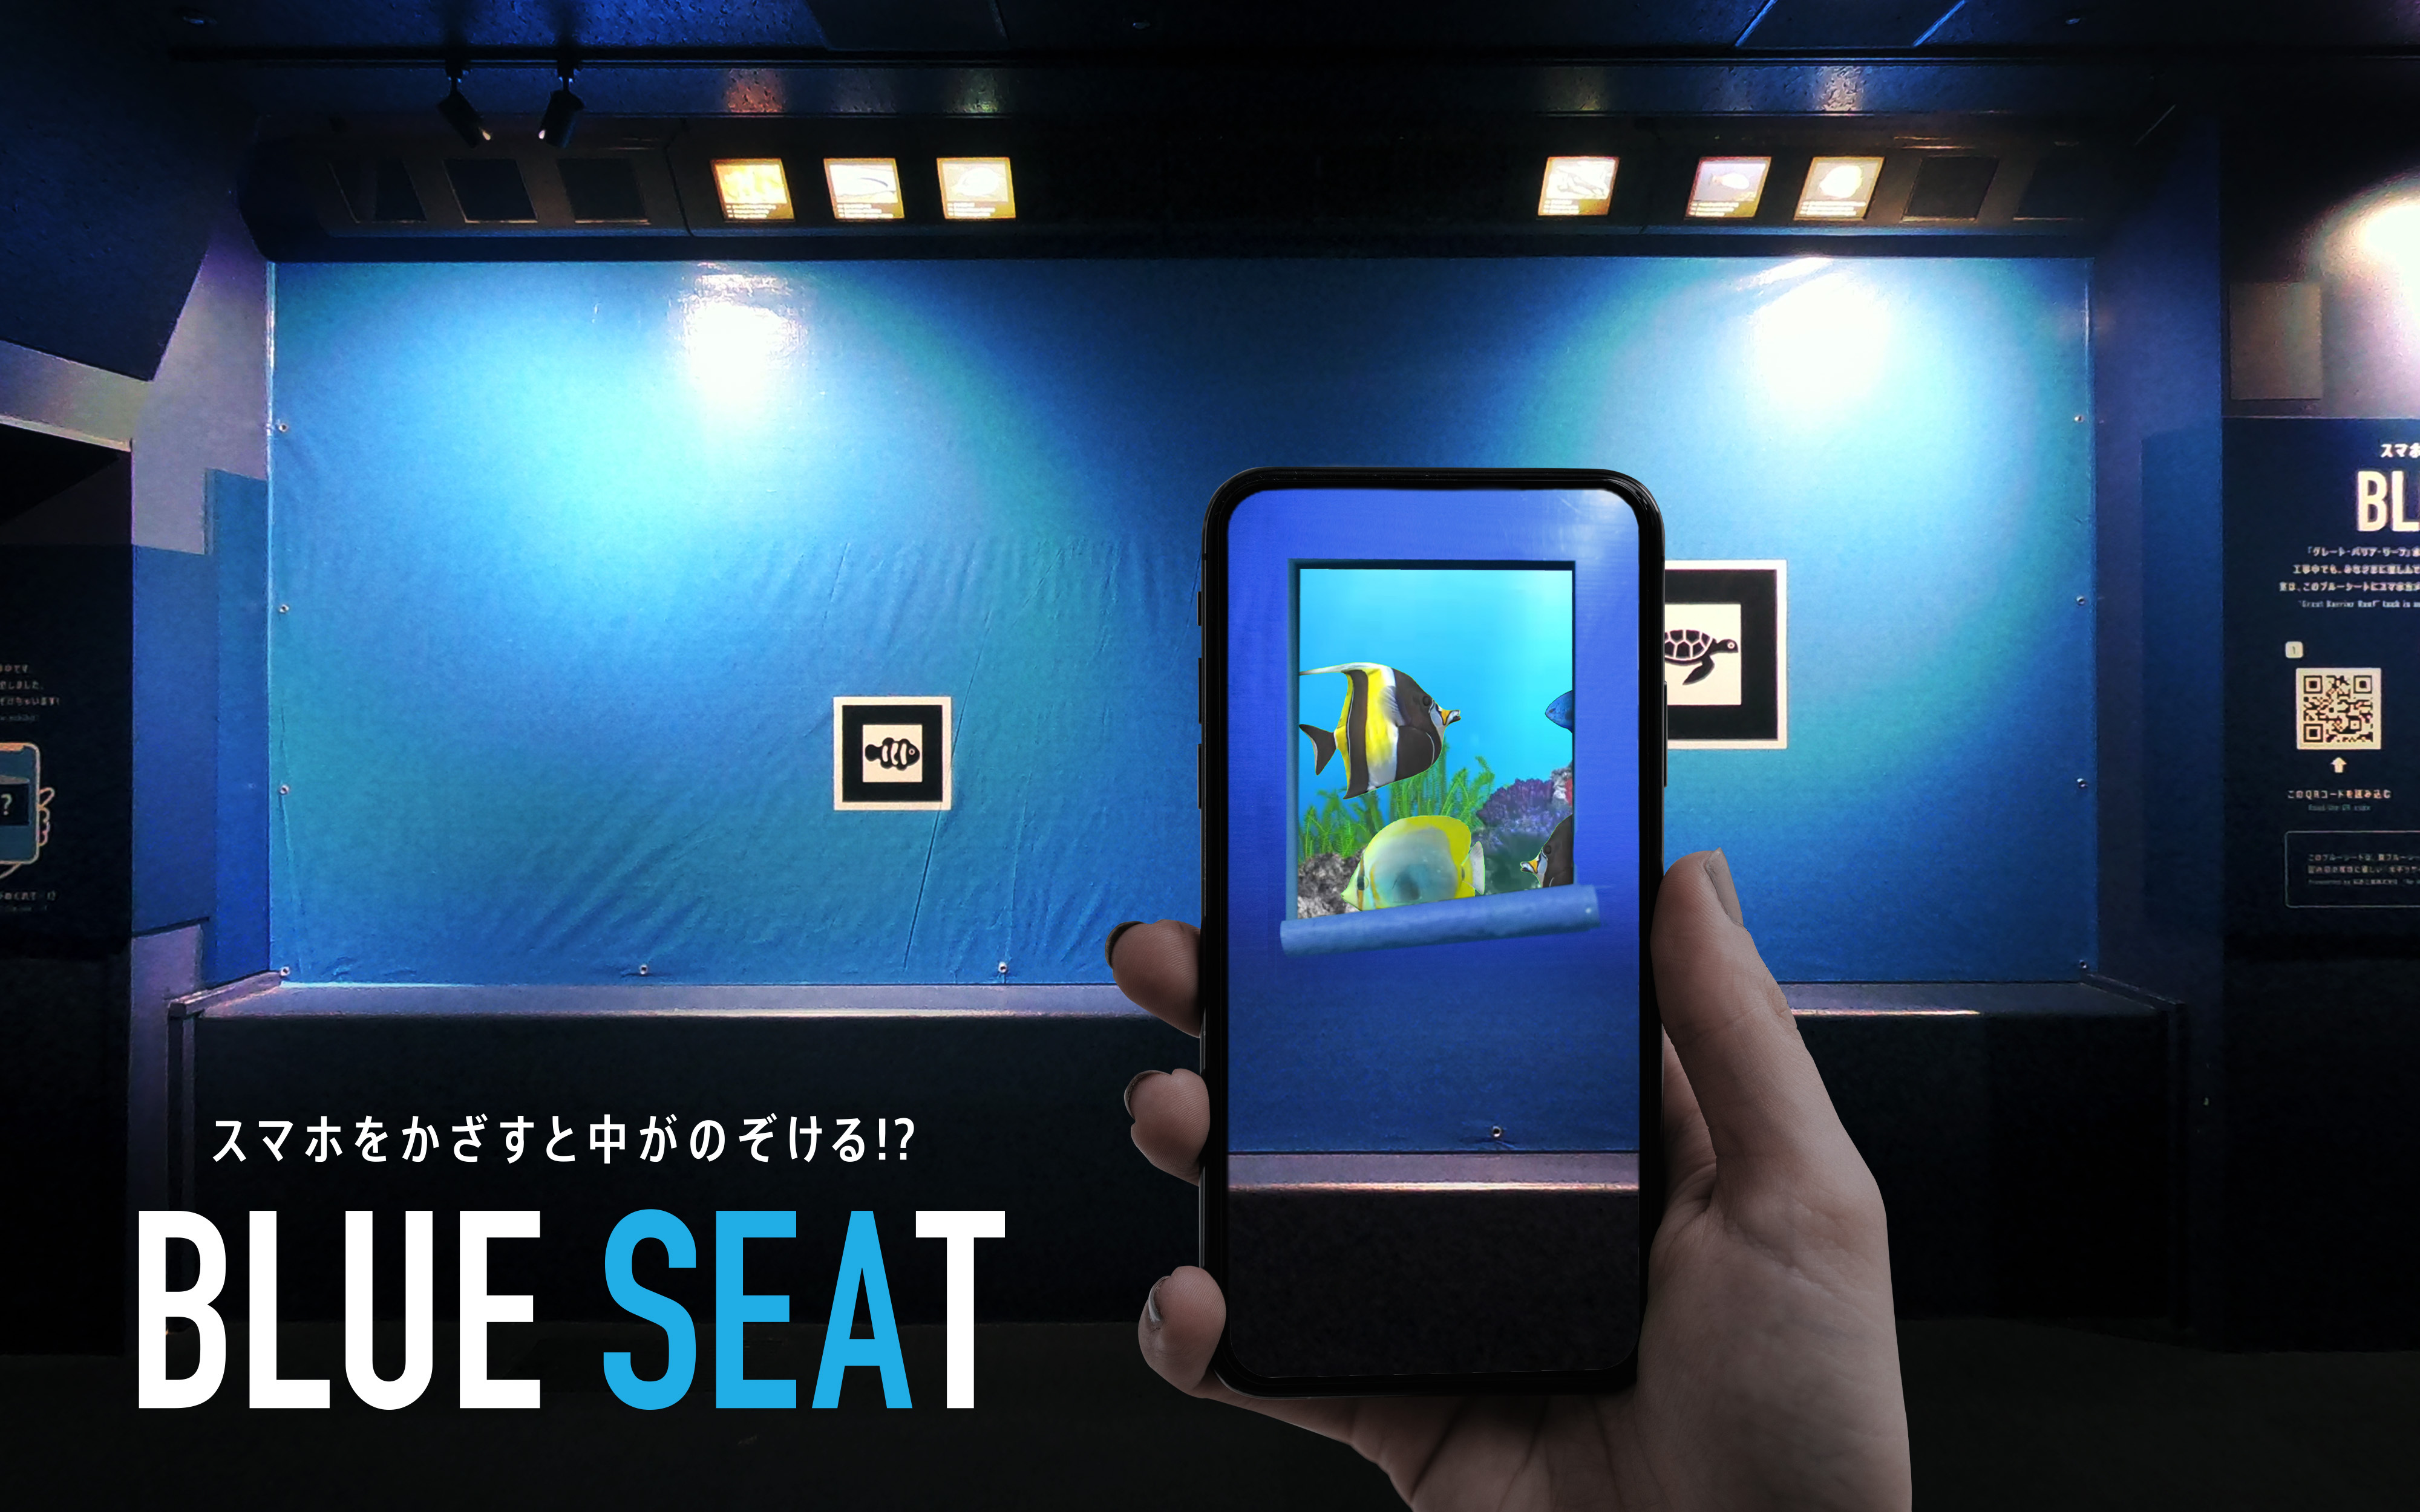 海遊館の特別企画
『スマホをかざすと中がのぞける!?「BLUE SEAT」』- Net24ニュース